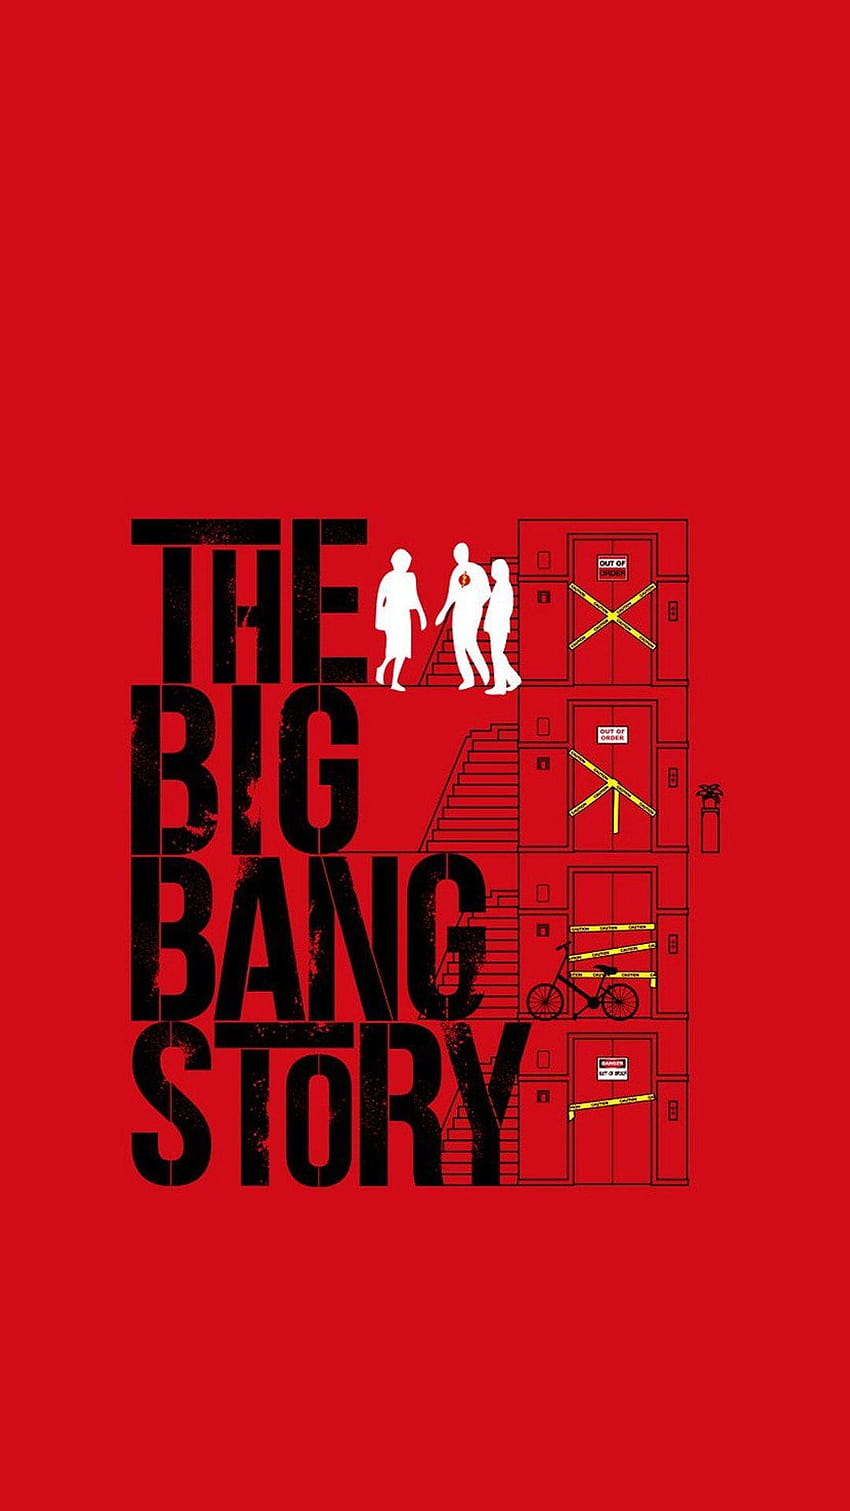 The Big Bang Theory, Bazinga, And Sheldon Cooper, the big bang theory mobile HD phone wallpaper